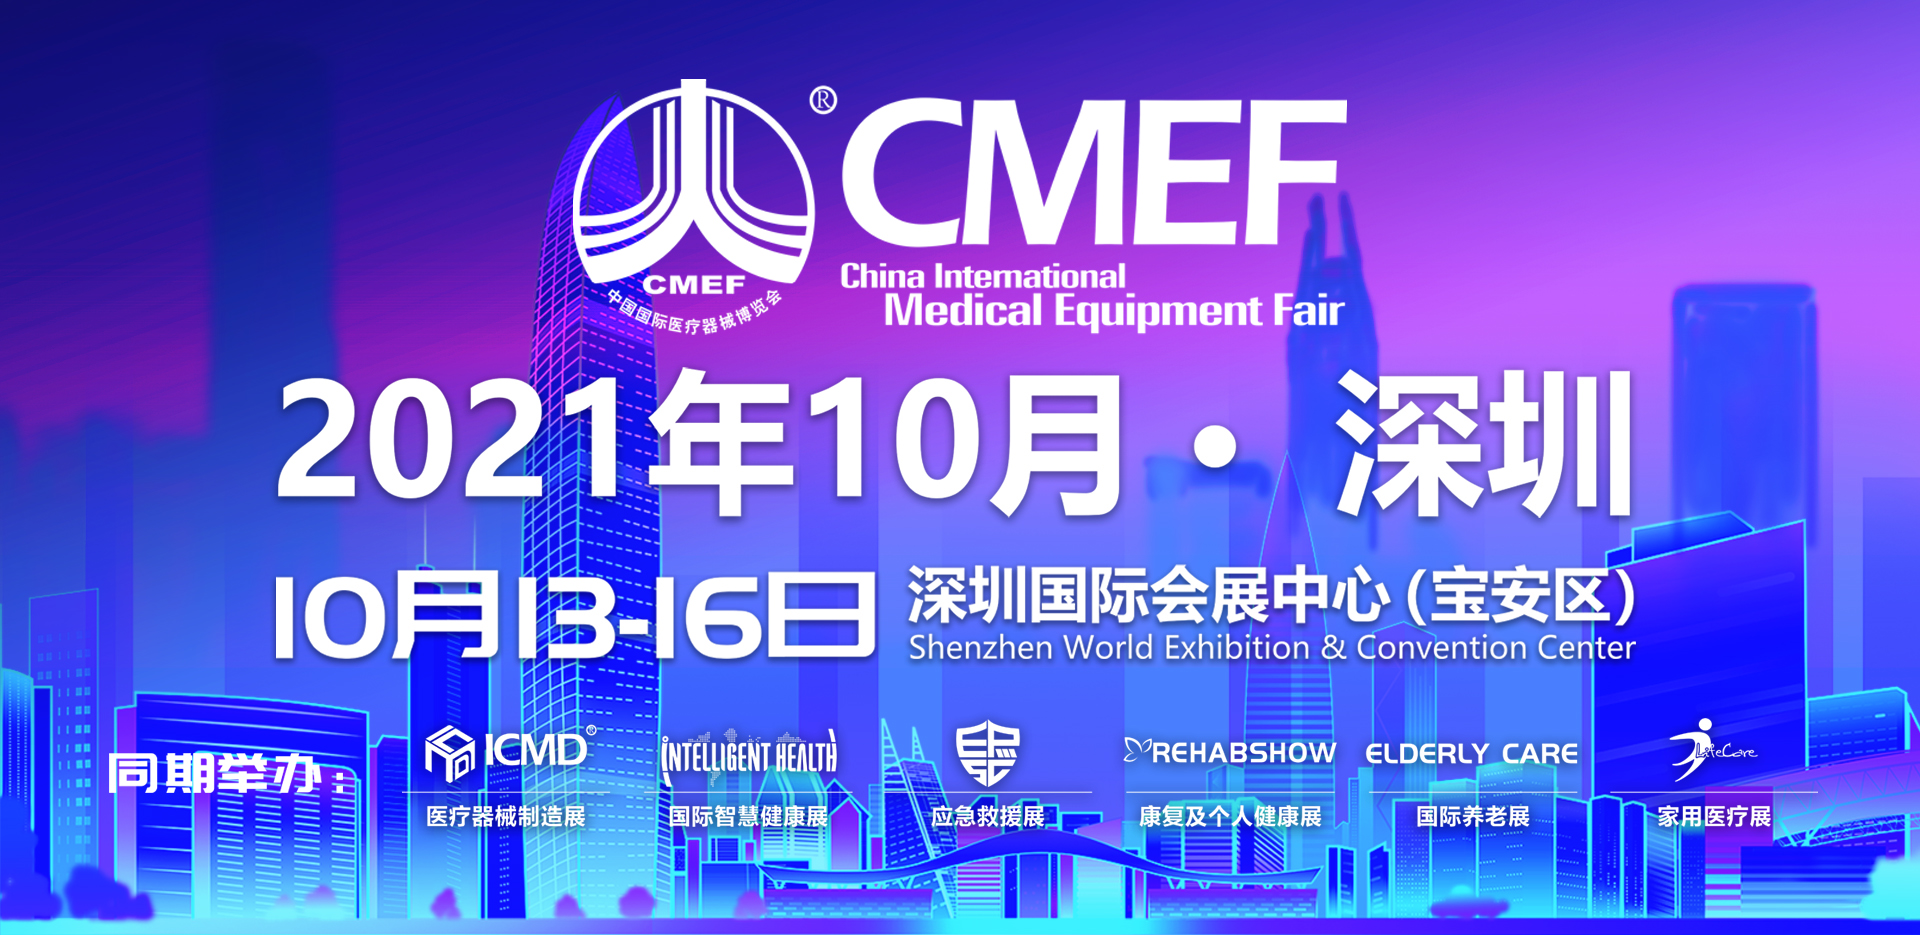 展会预告|宝洁包装那个怪物是妖兽与您相约CMEF中国国际医疗器械博览会